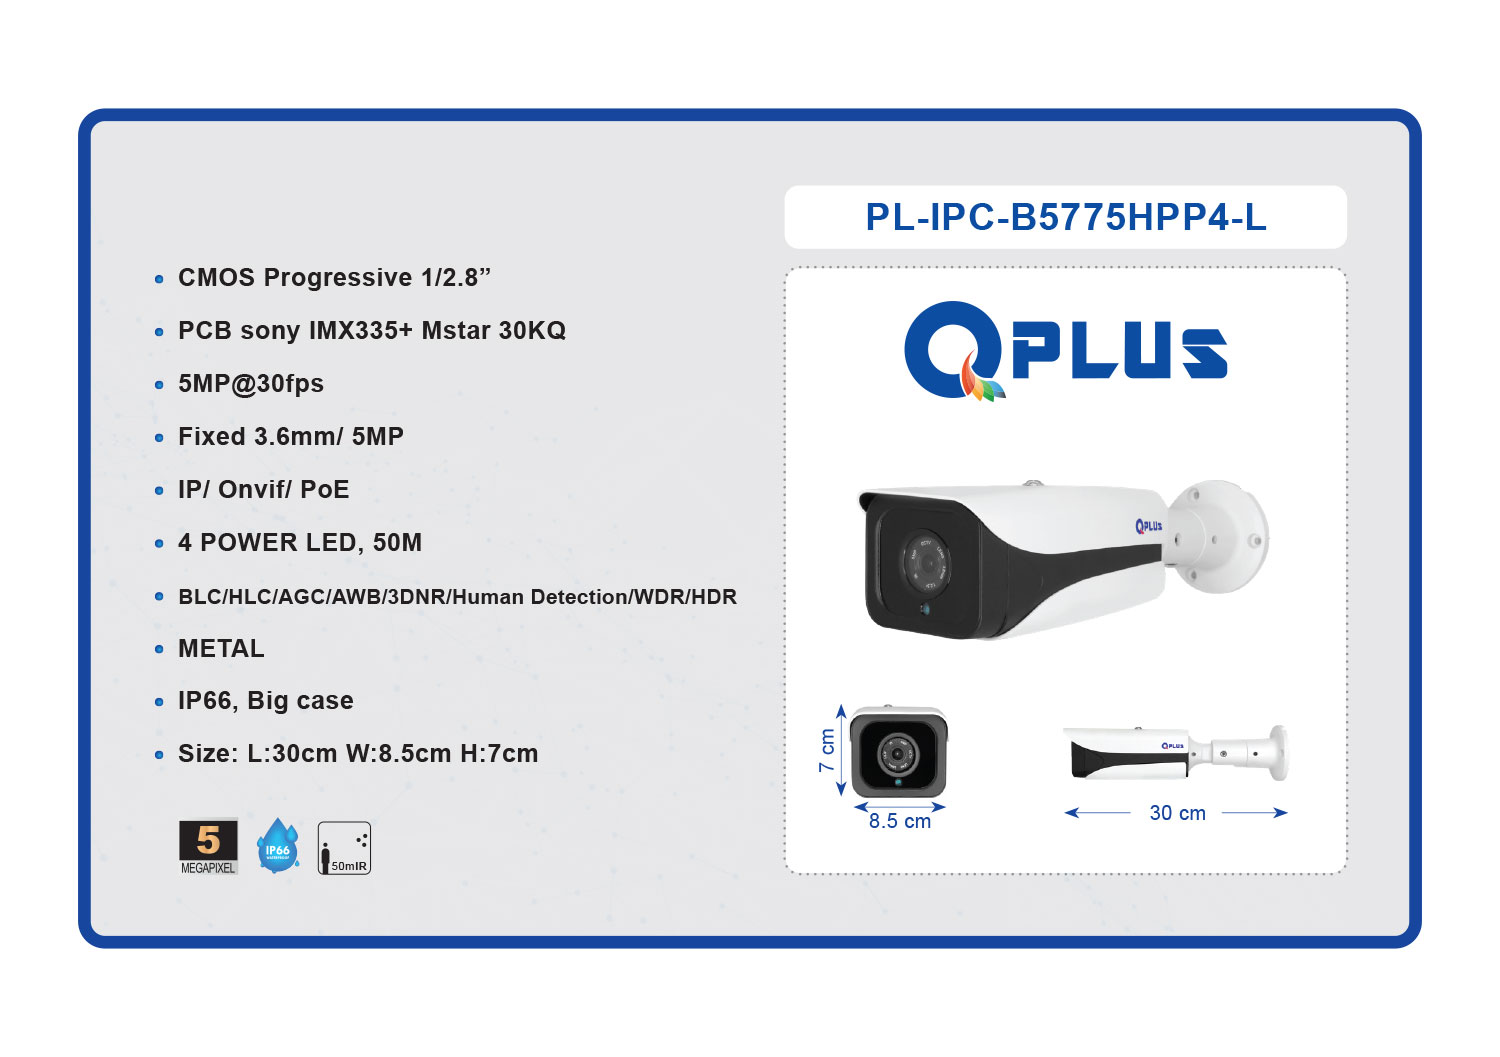 دوربین مداربسته PL-IPC-B5775HPP4-L کیو پلاس